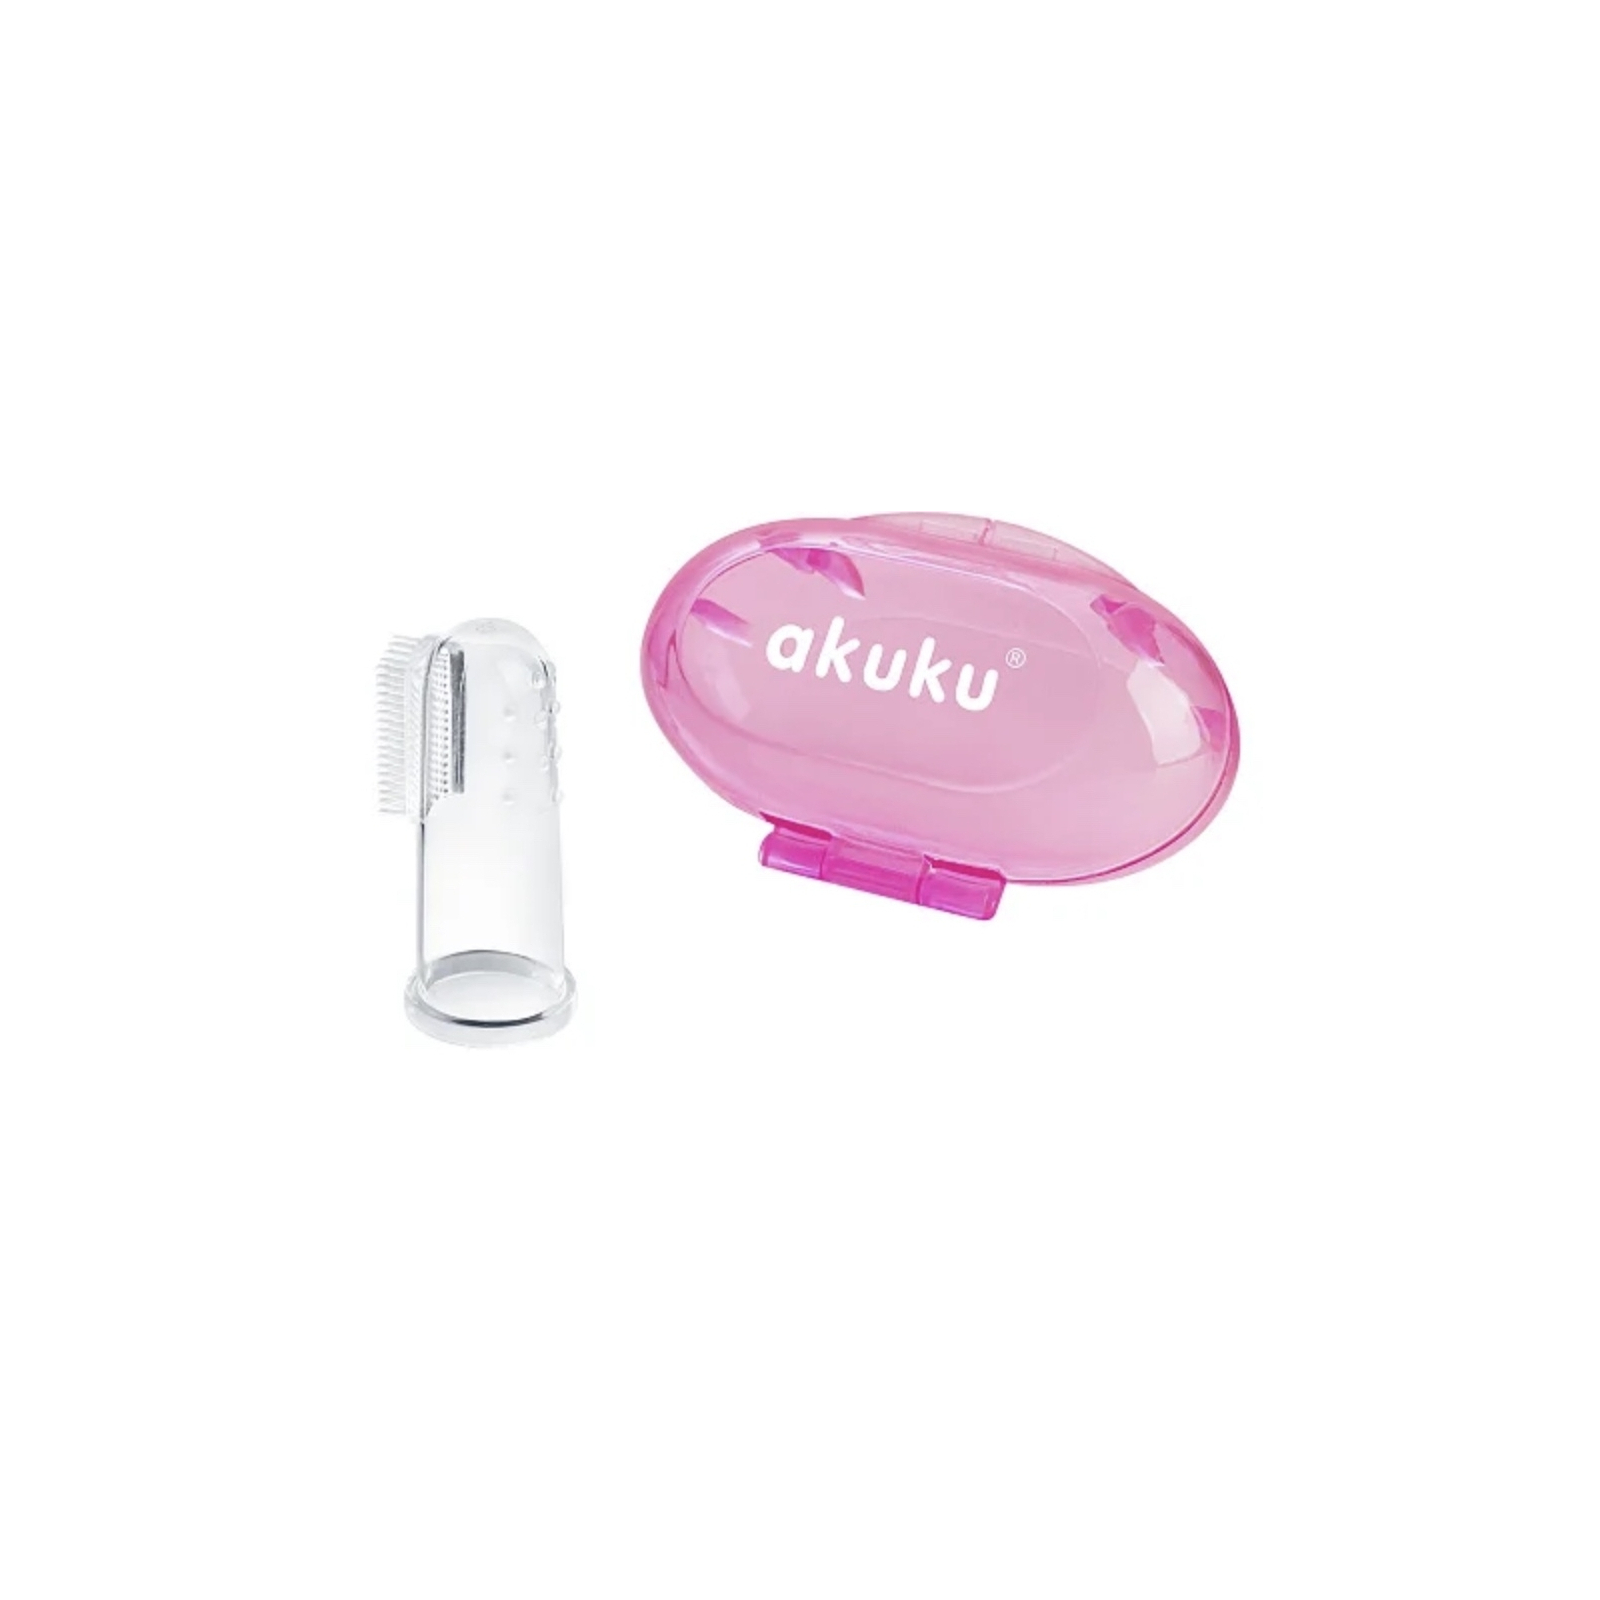 Детская зубная щетка Akuku силиконовая, массажер для десен, розовый (A0265)